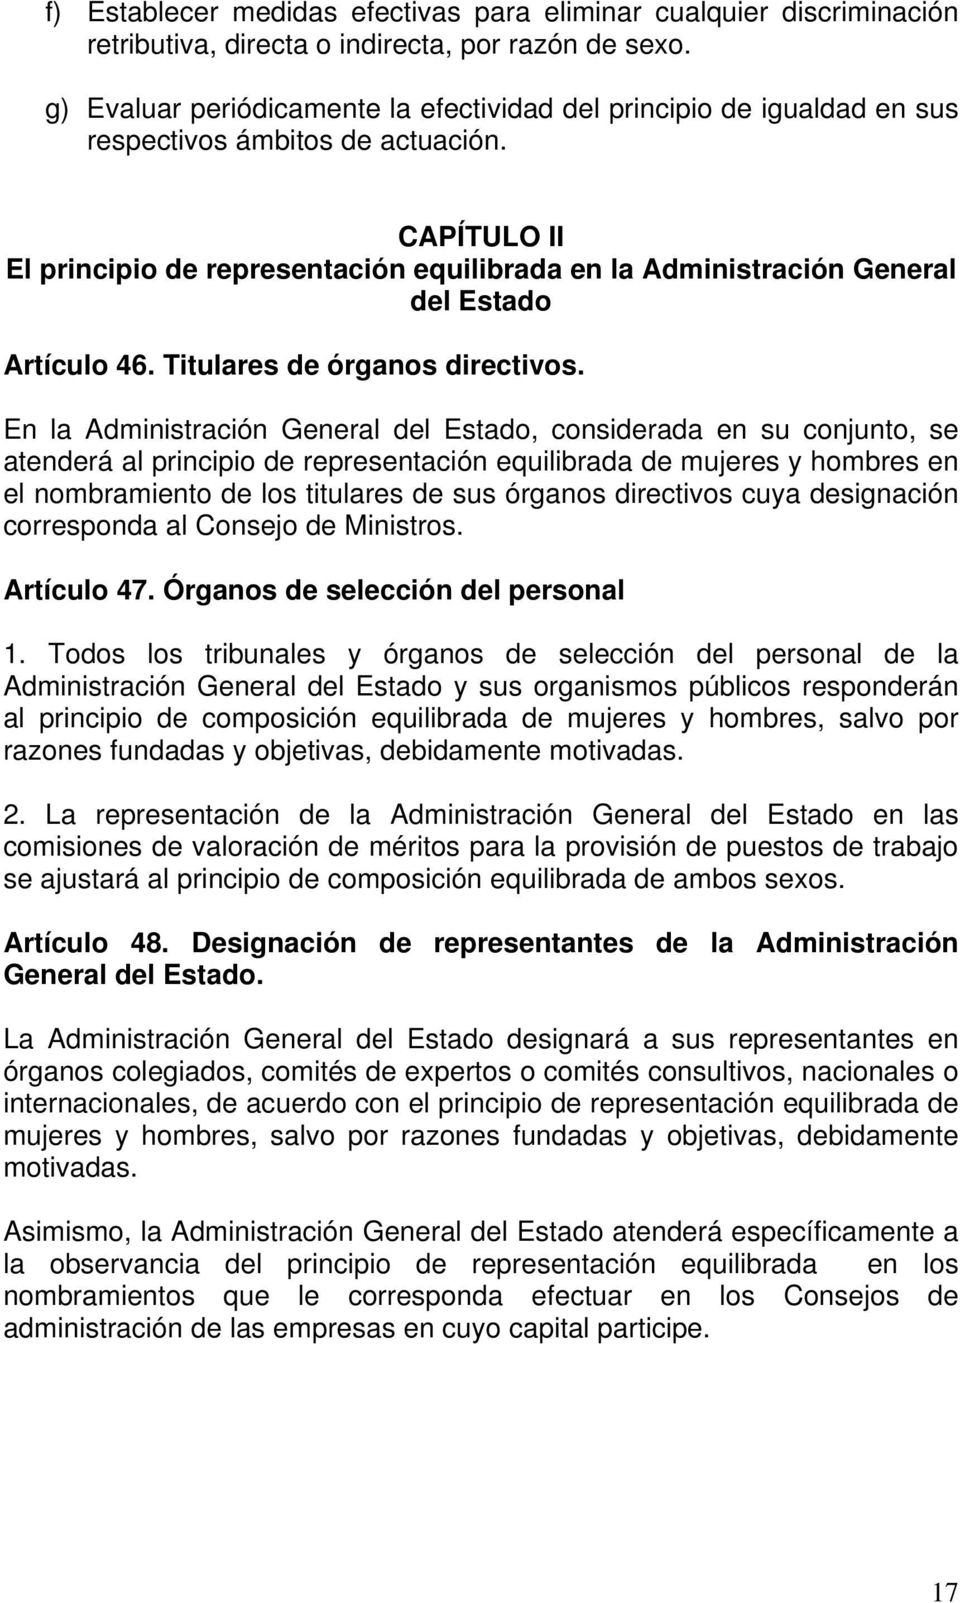 CAPÍTULO II El principio de representación equilibrada en la Administración General del Estado Artículo 46. Titulares de órganos directivos.